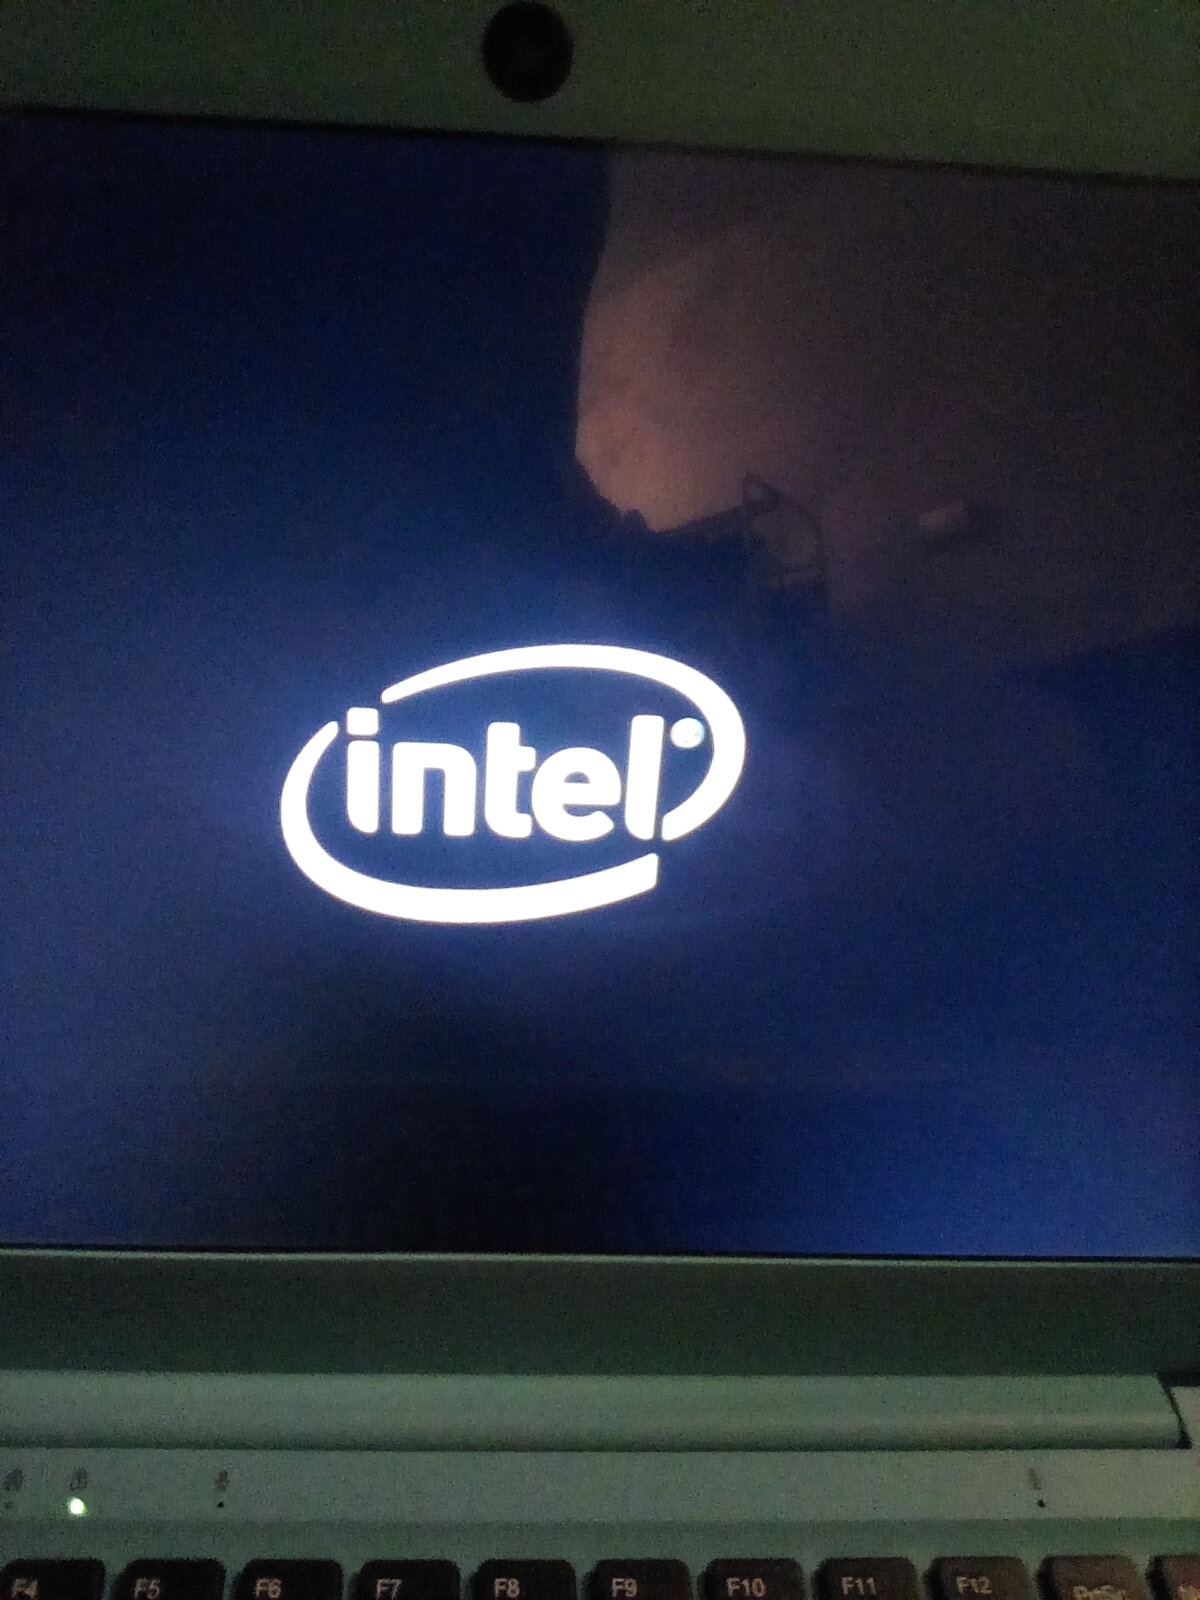 The turn on Intel screen 6d0e99be-e002-4bd6-9031-1a23550de8ba?upload=true.jpg